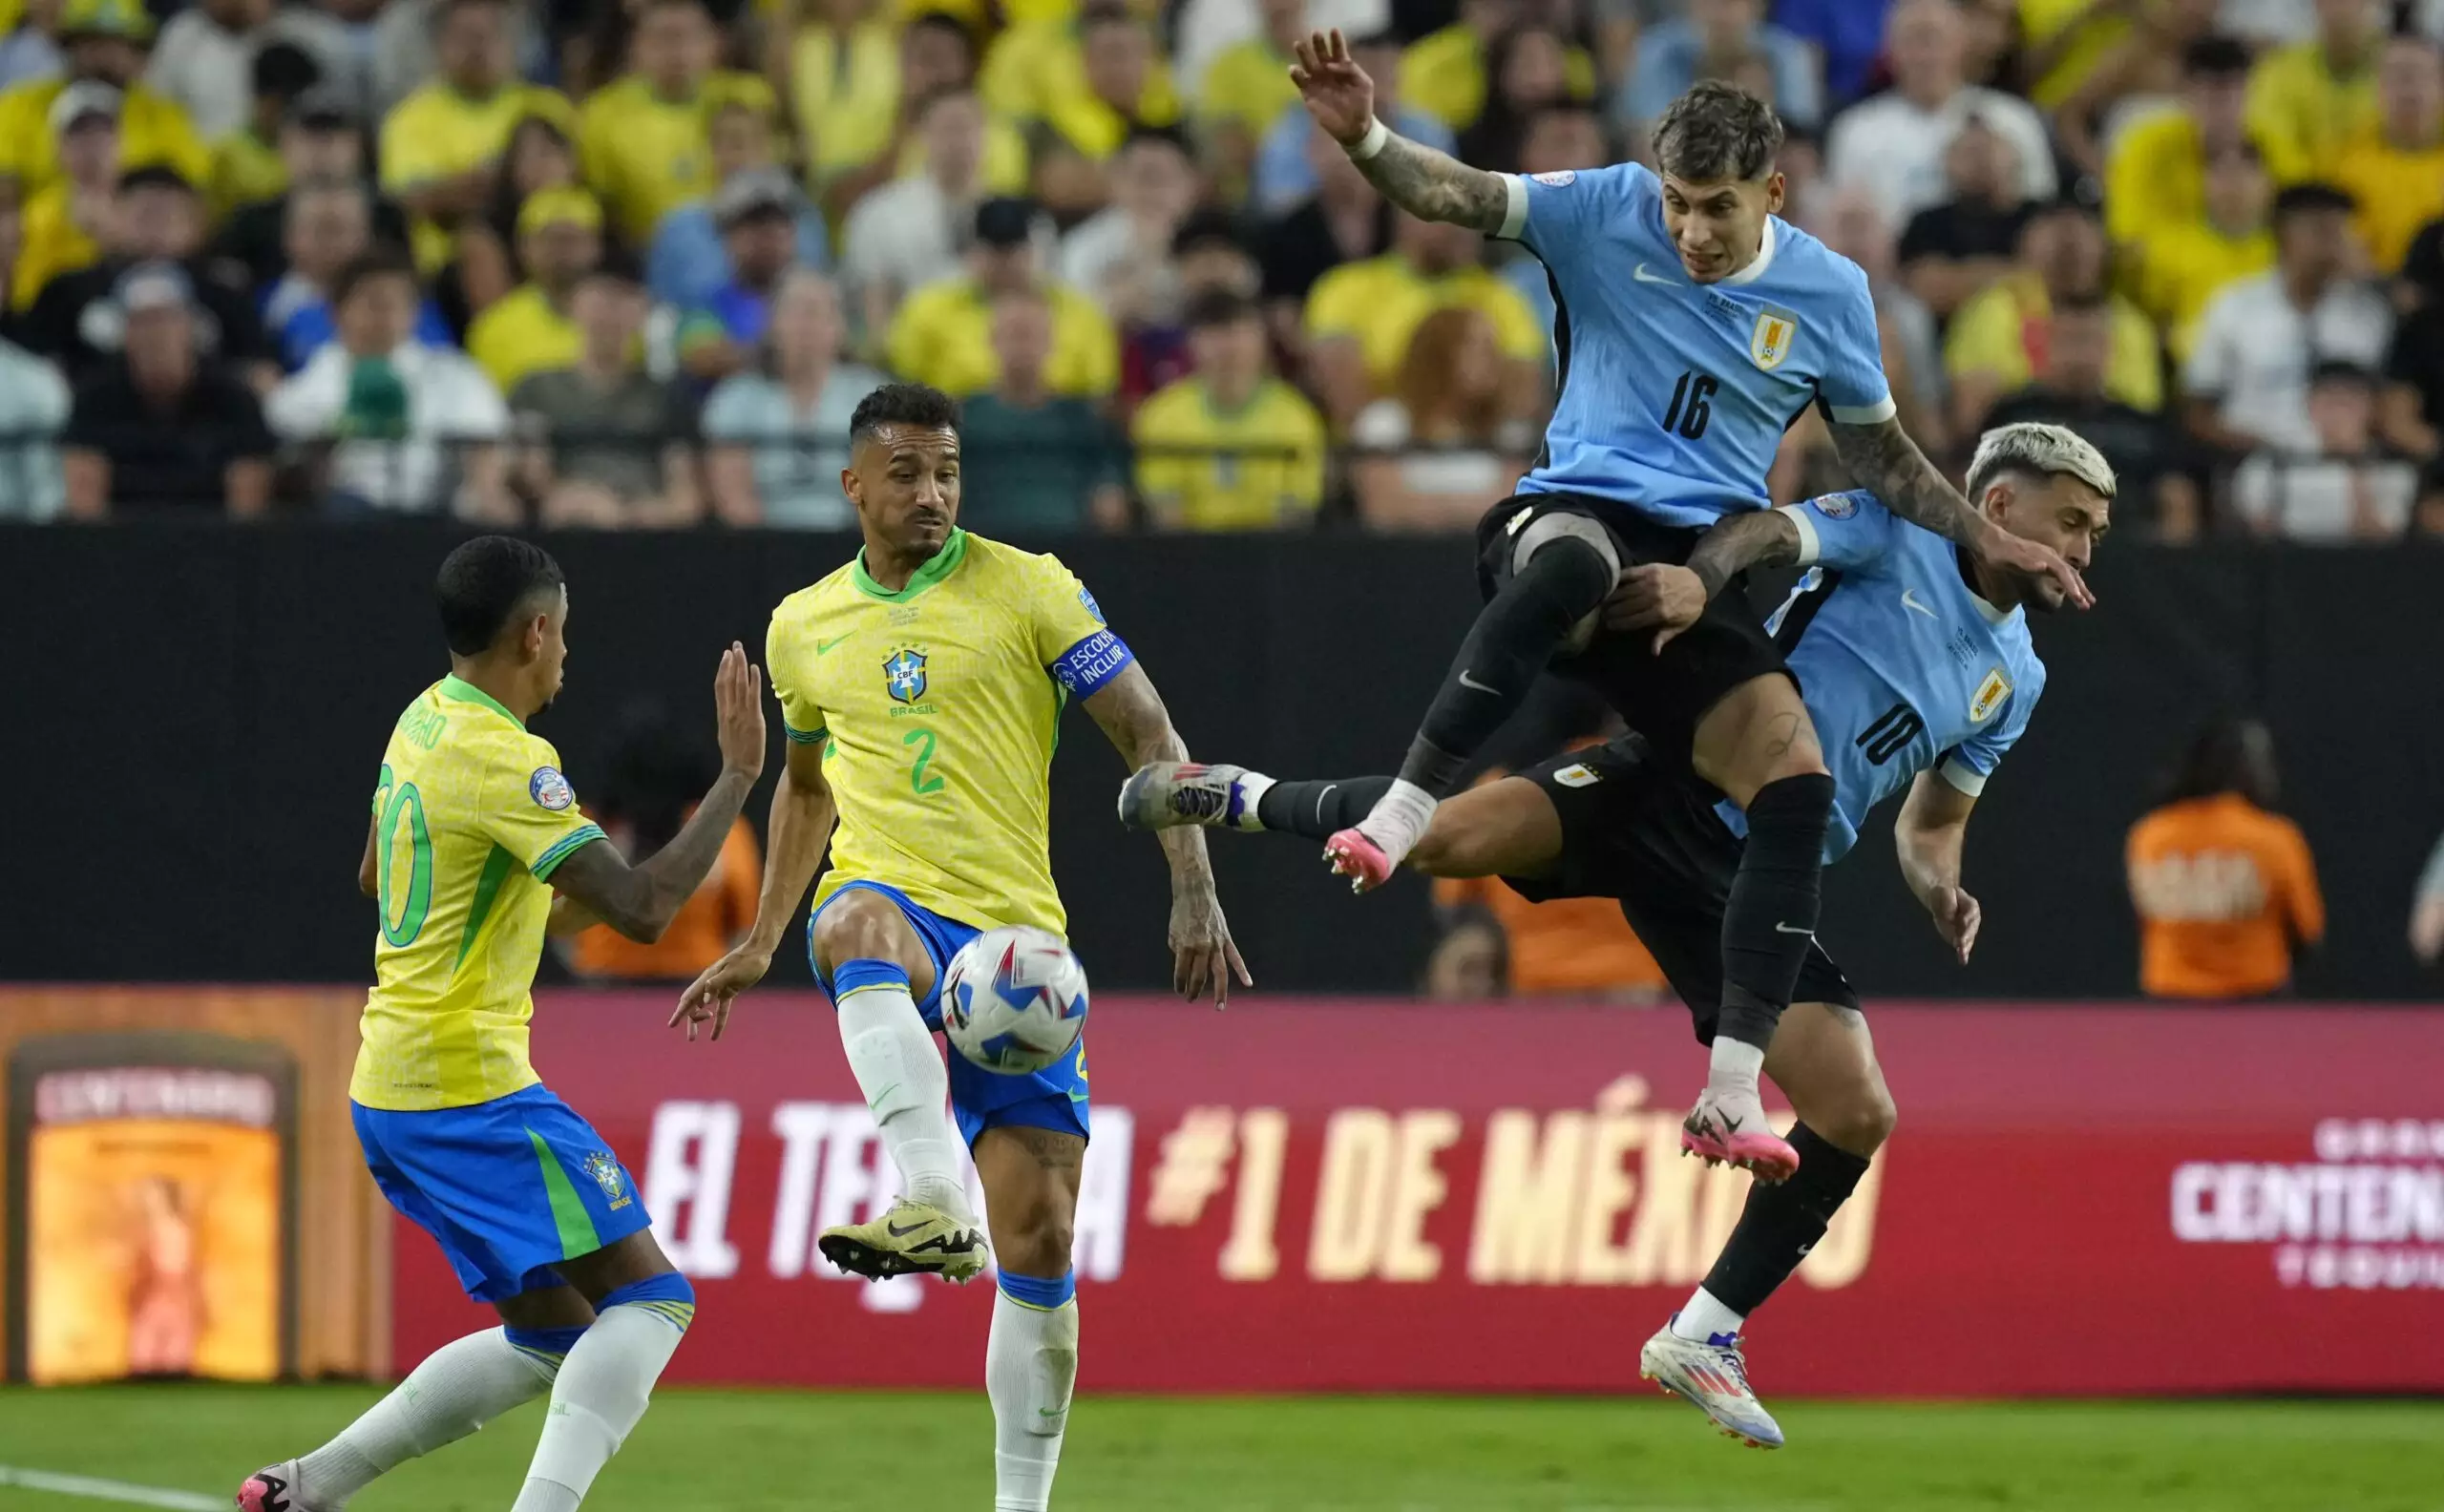 Бразилия вылетела из Кубка Америки, повторив худший результат в истории